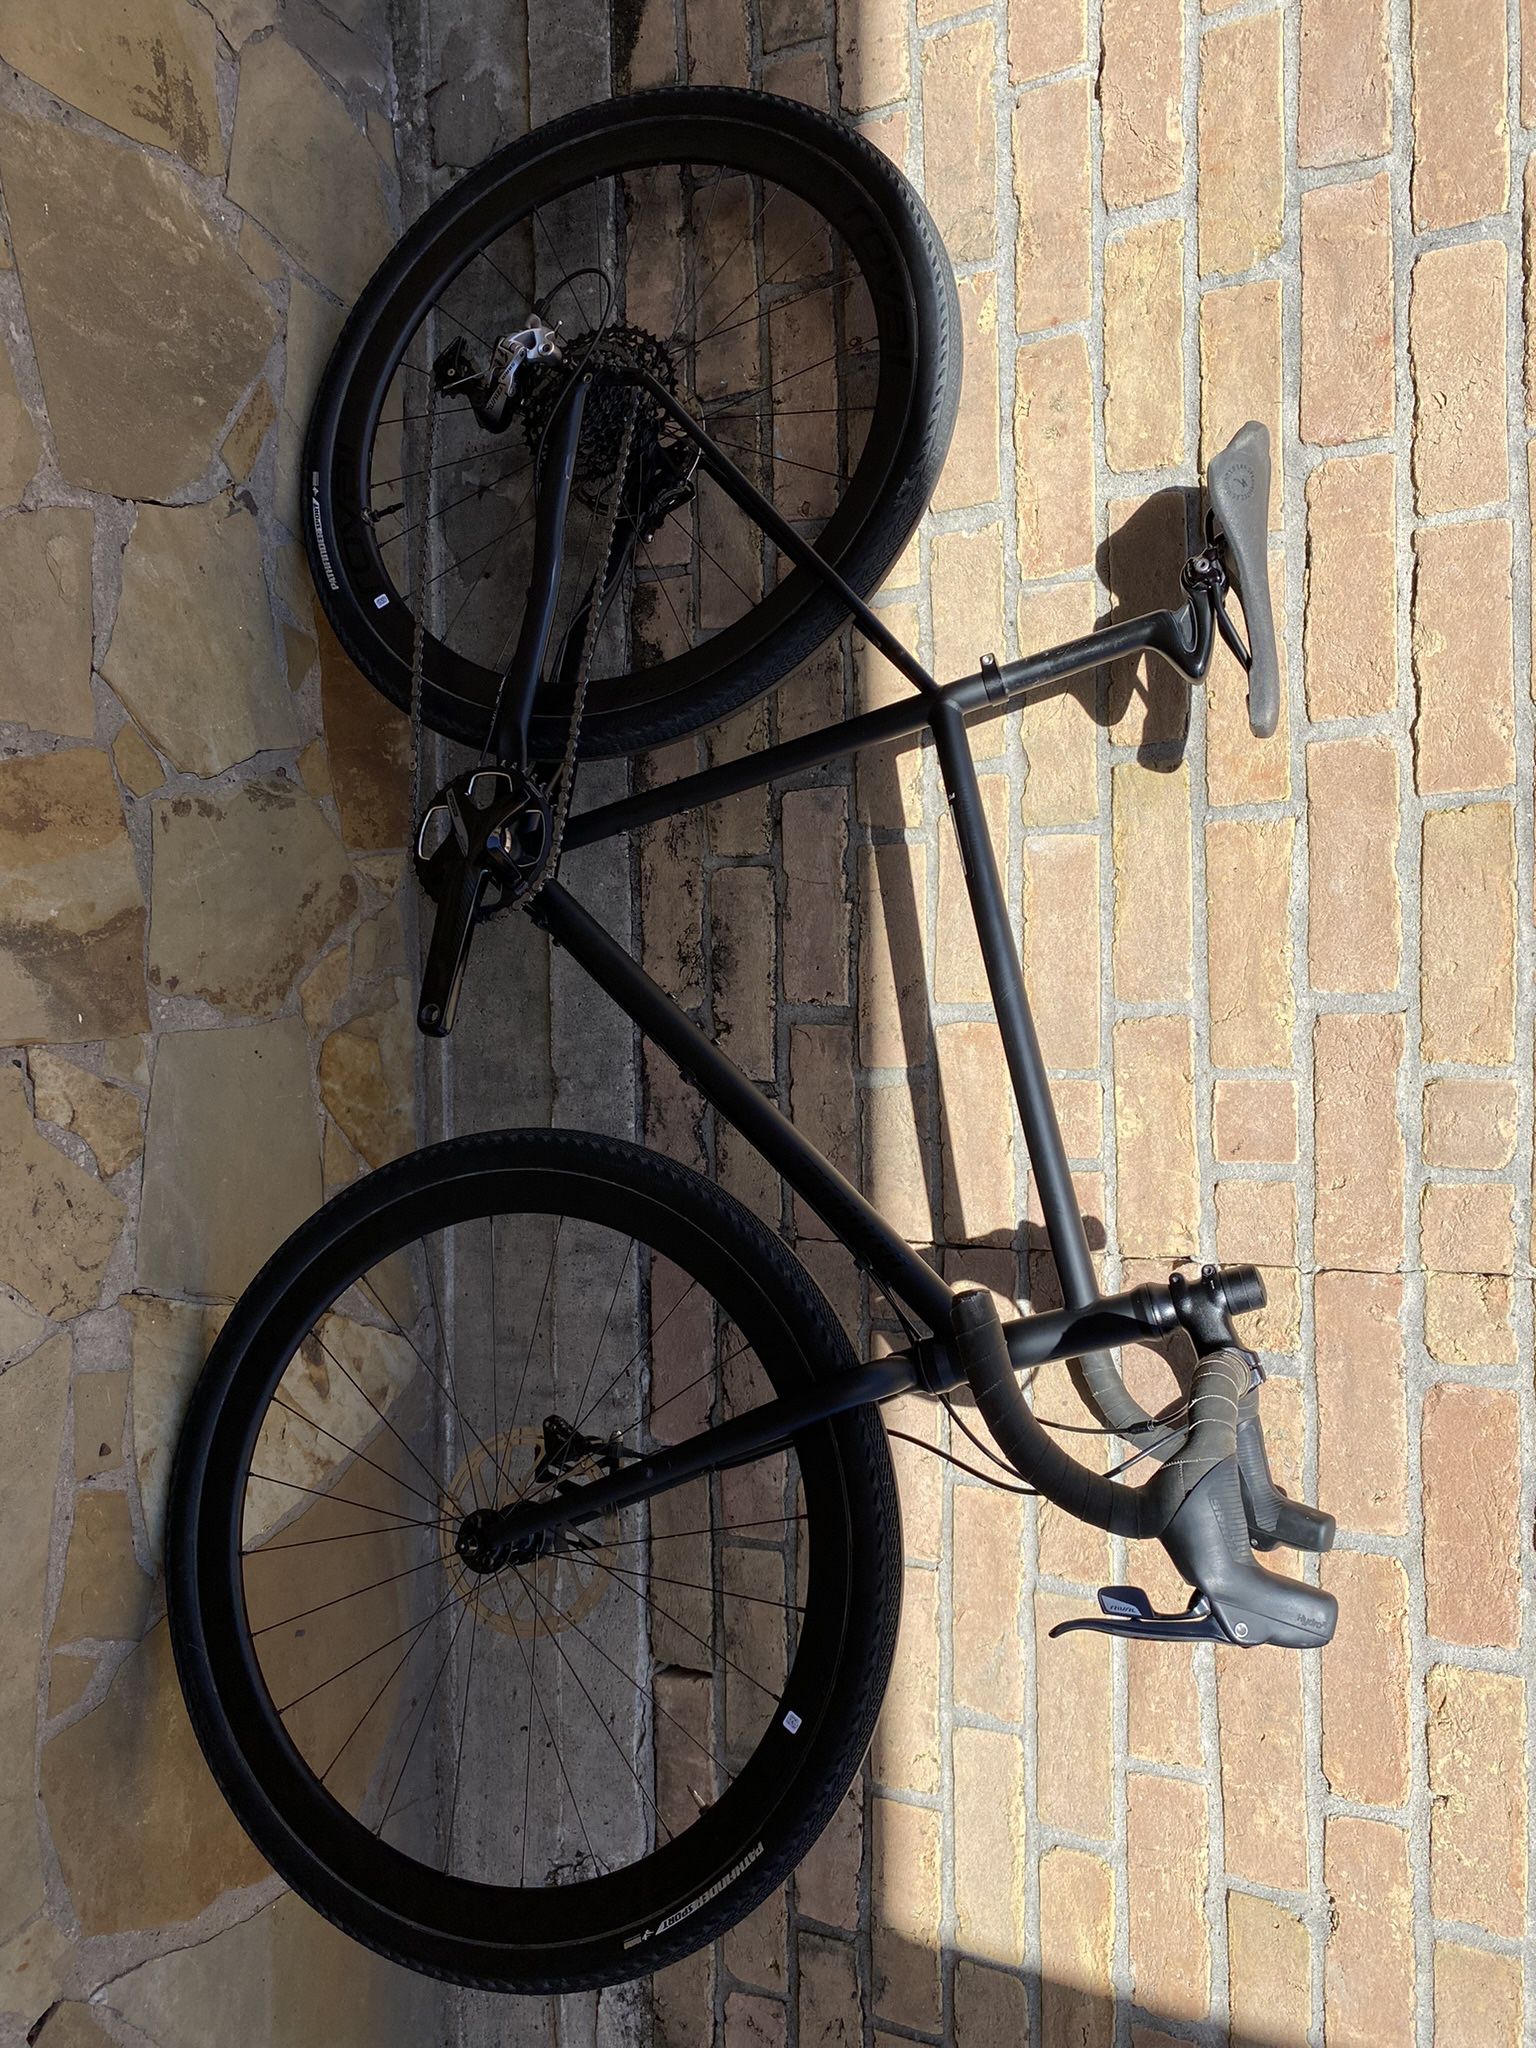 Specialized AWOL Comp Gravel Bike